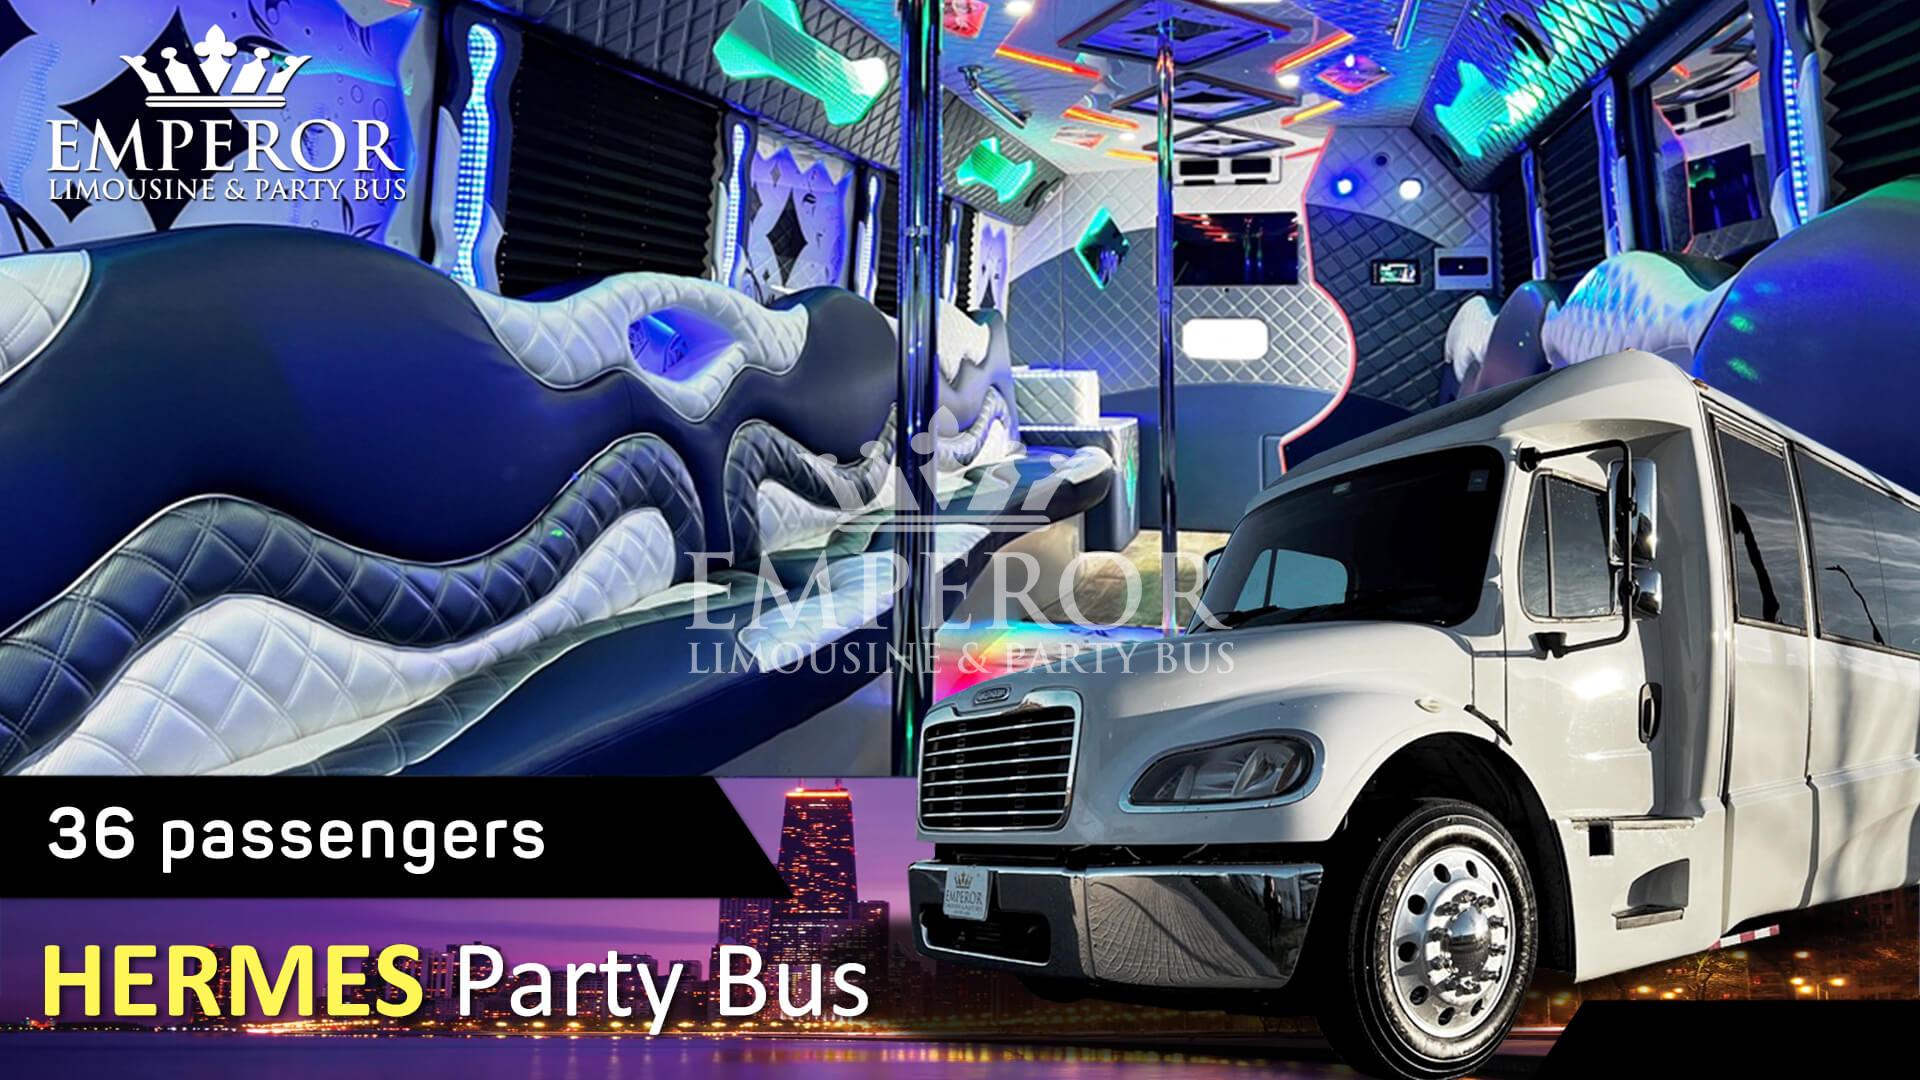 Party bus rental in Bourbonnais, IL - Hermes Edition